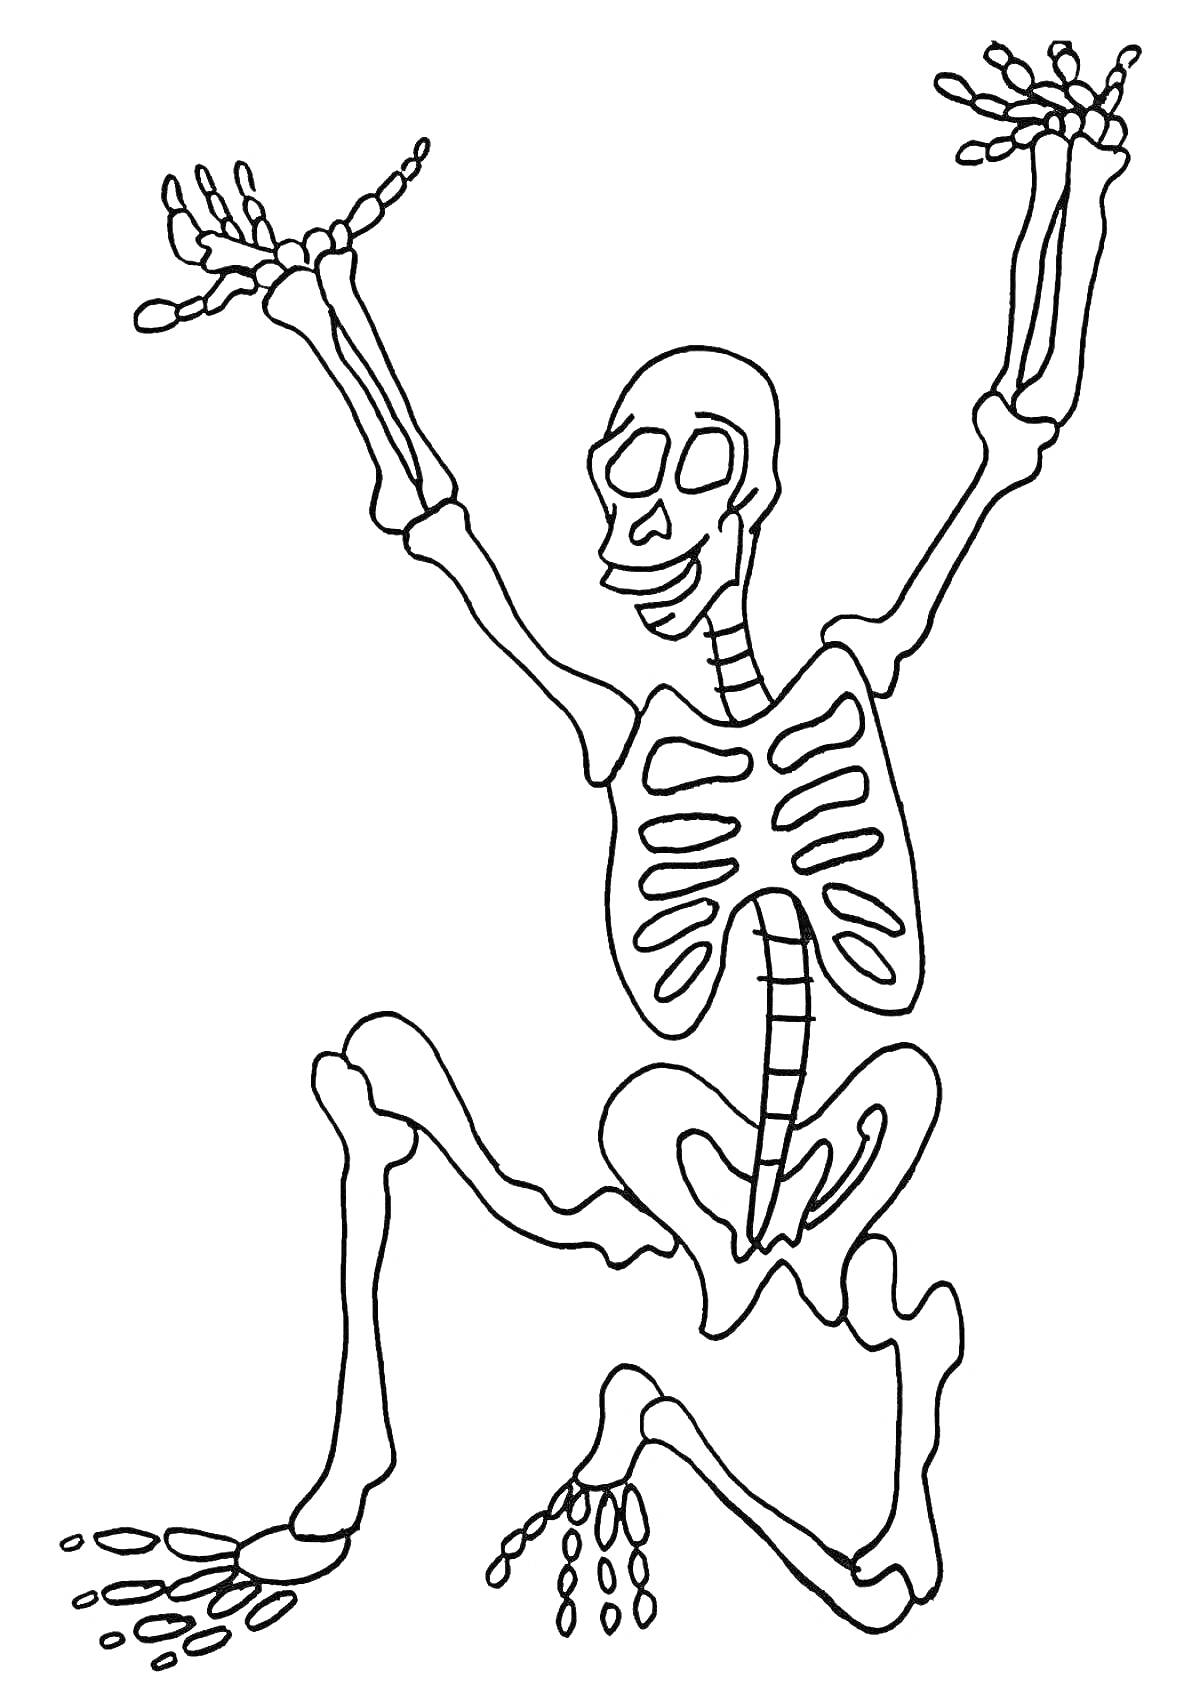 Скелет с поднятыми руками и ногами